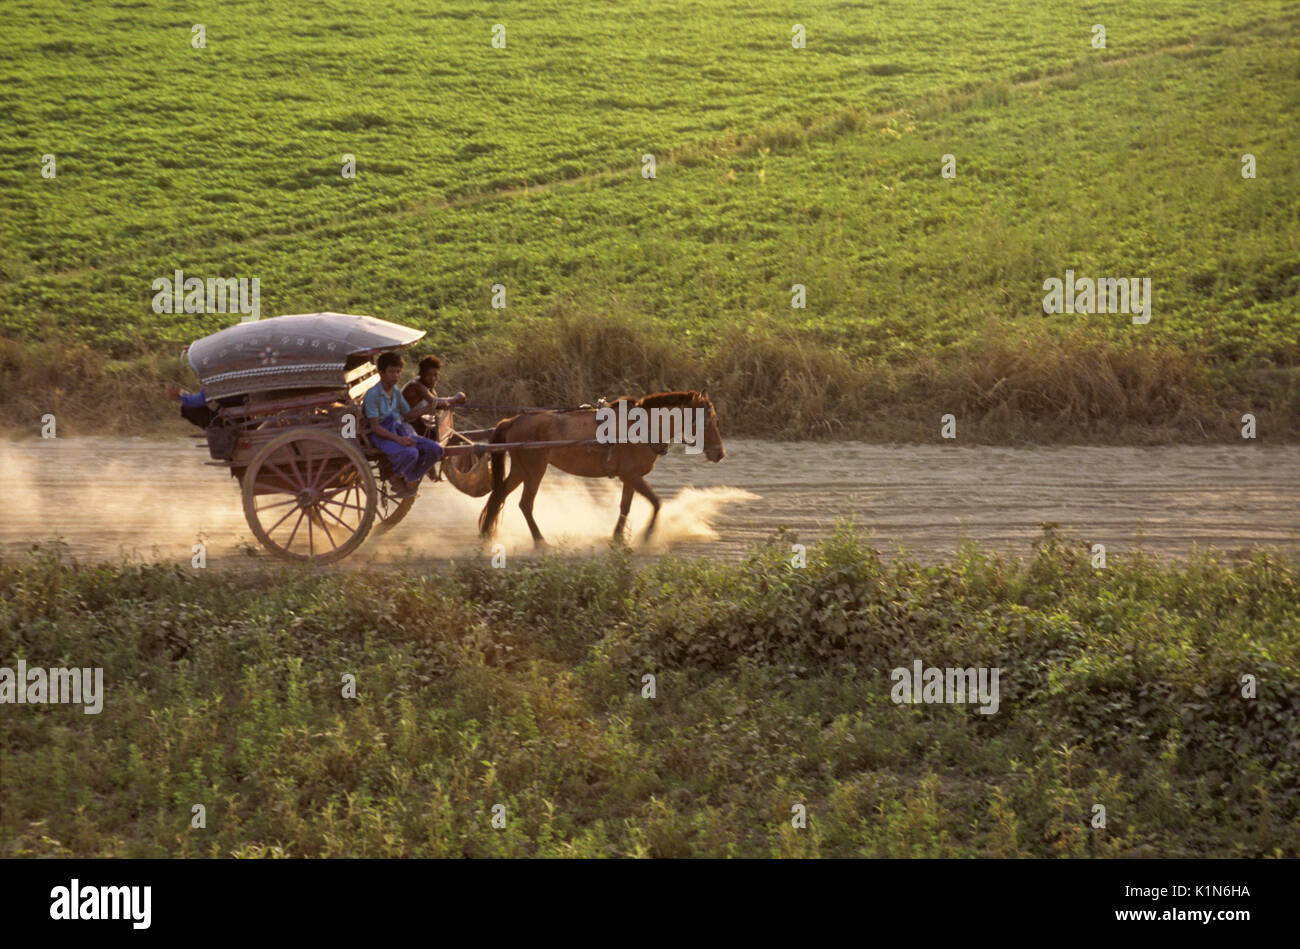 Panier Poney sur route poussiéreuse au milieu des champs agricoles, Amarapura, Mandalay, Birmanie (Myanmar) Banque D'Images